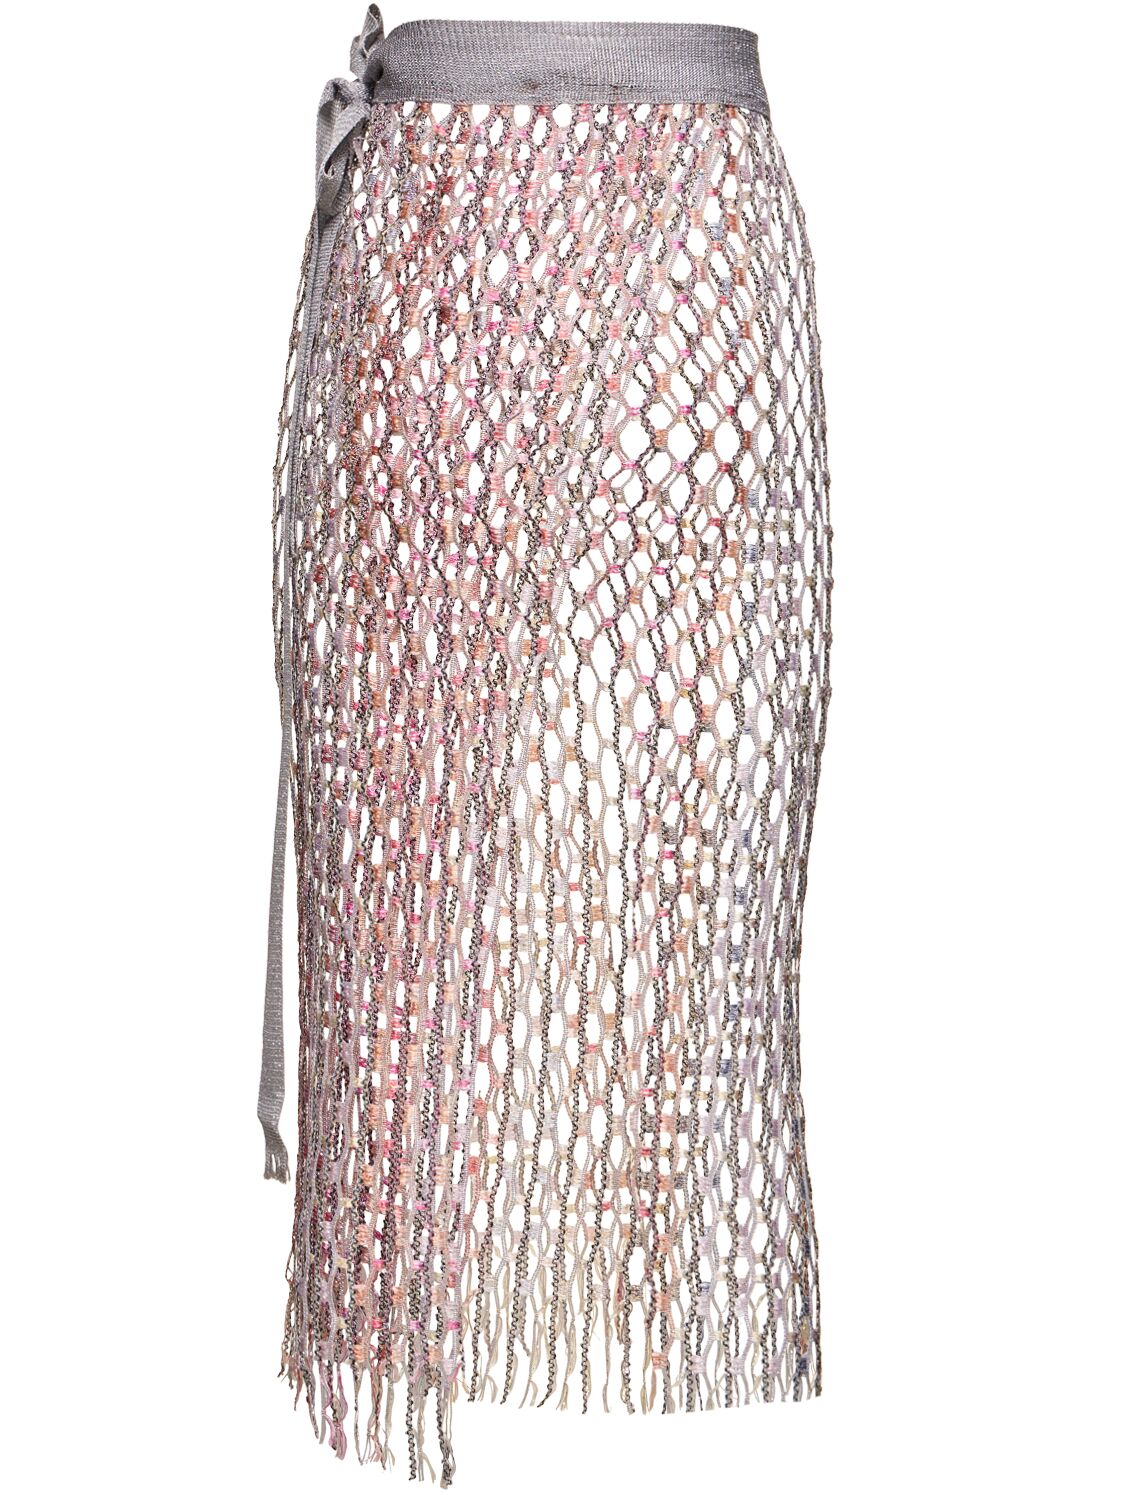 Missoni Lurex Net Pareo Skirt In Silver